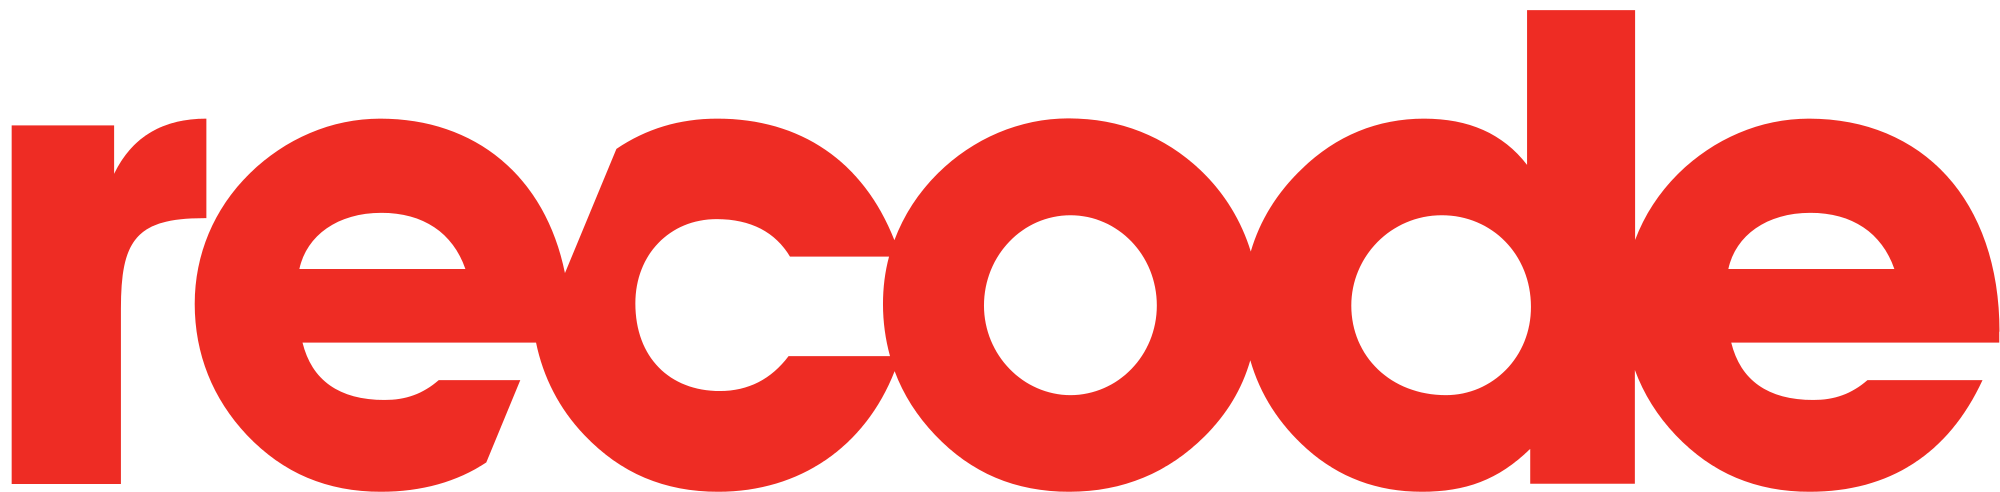 Recode logo